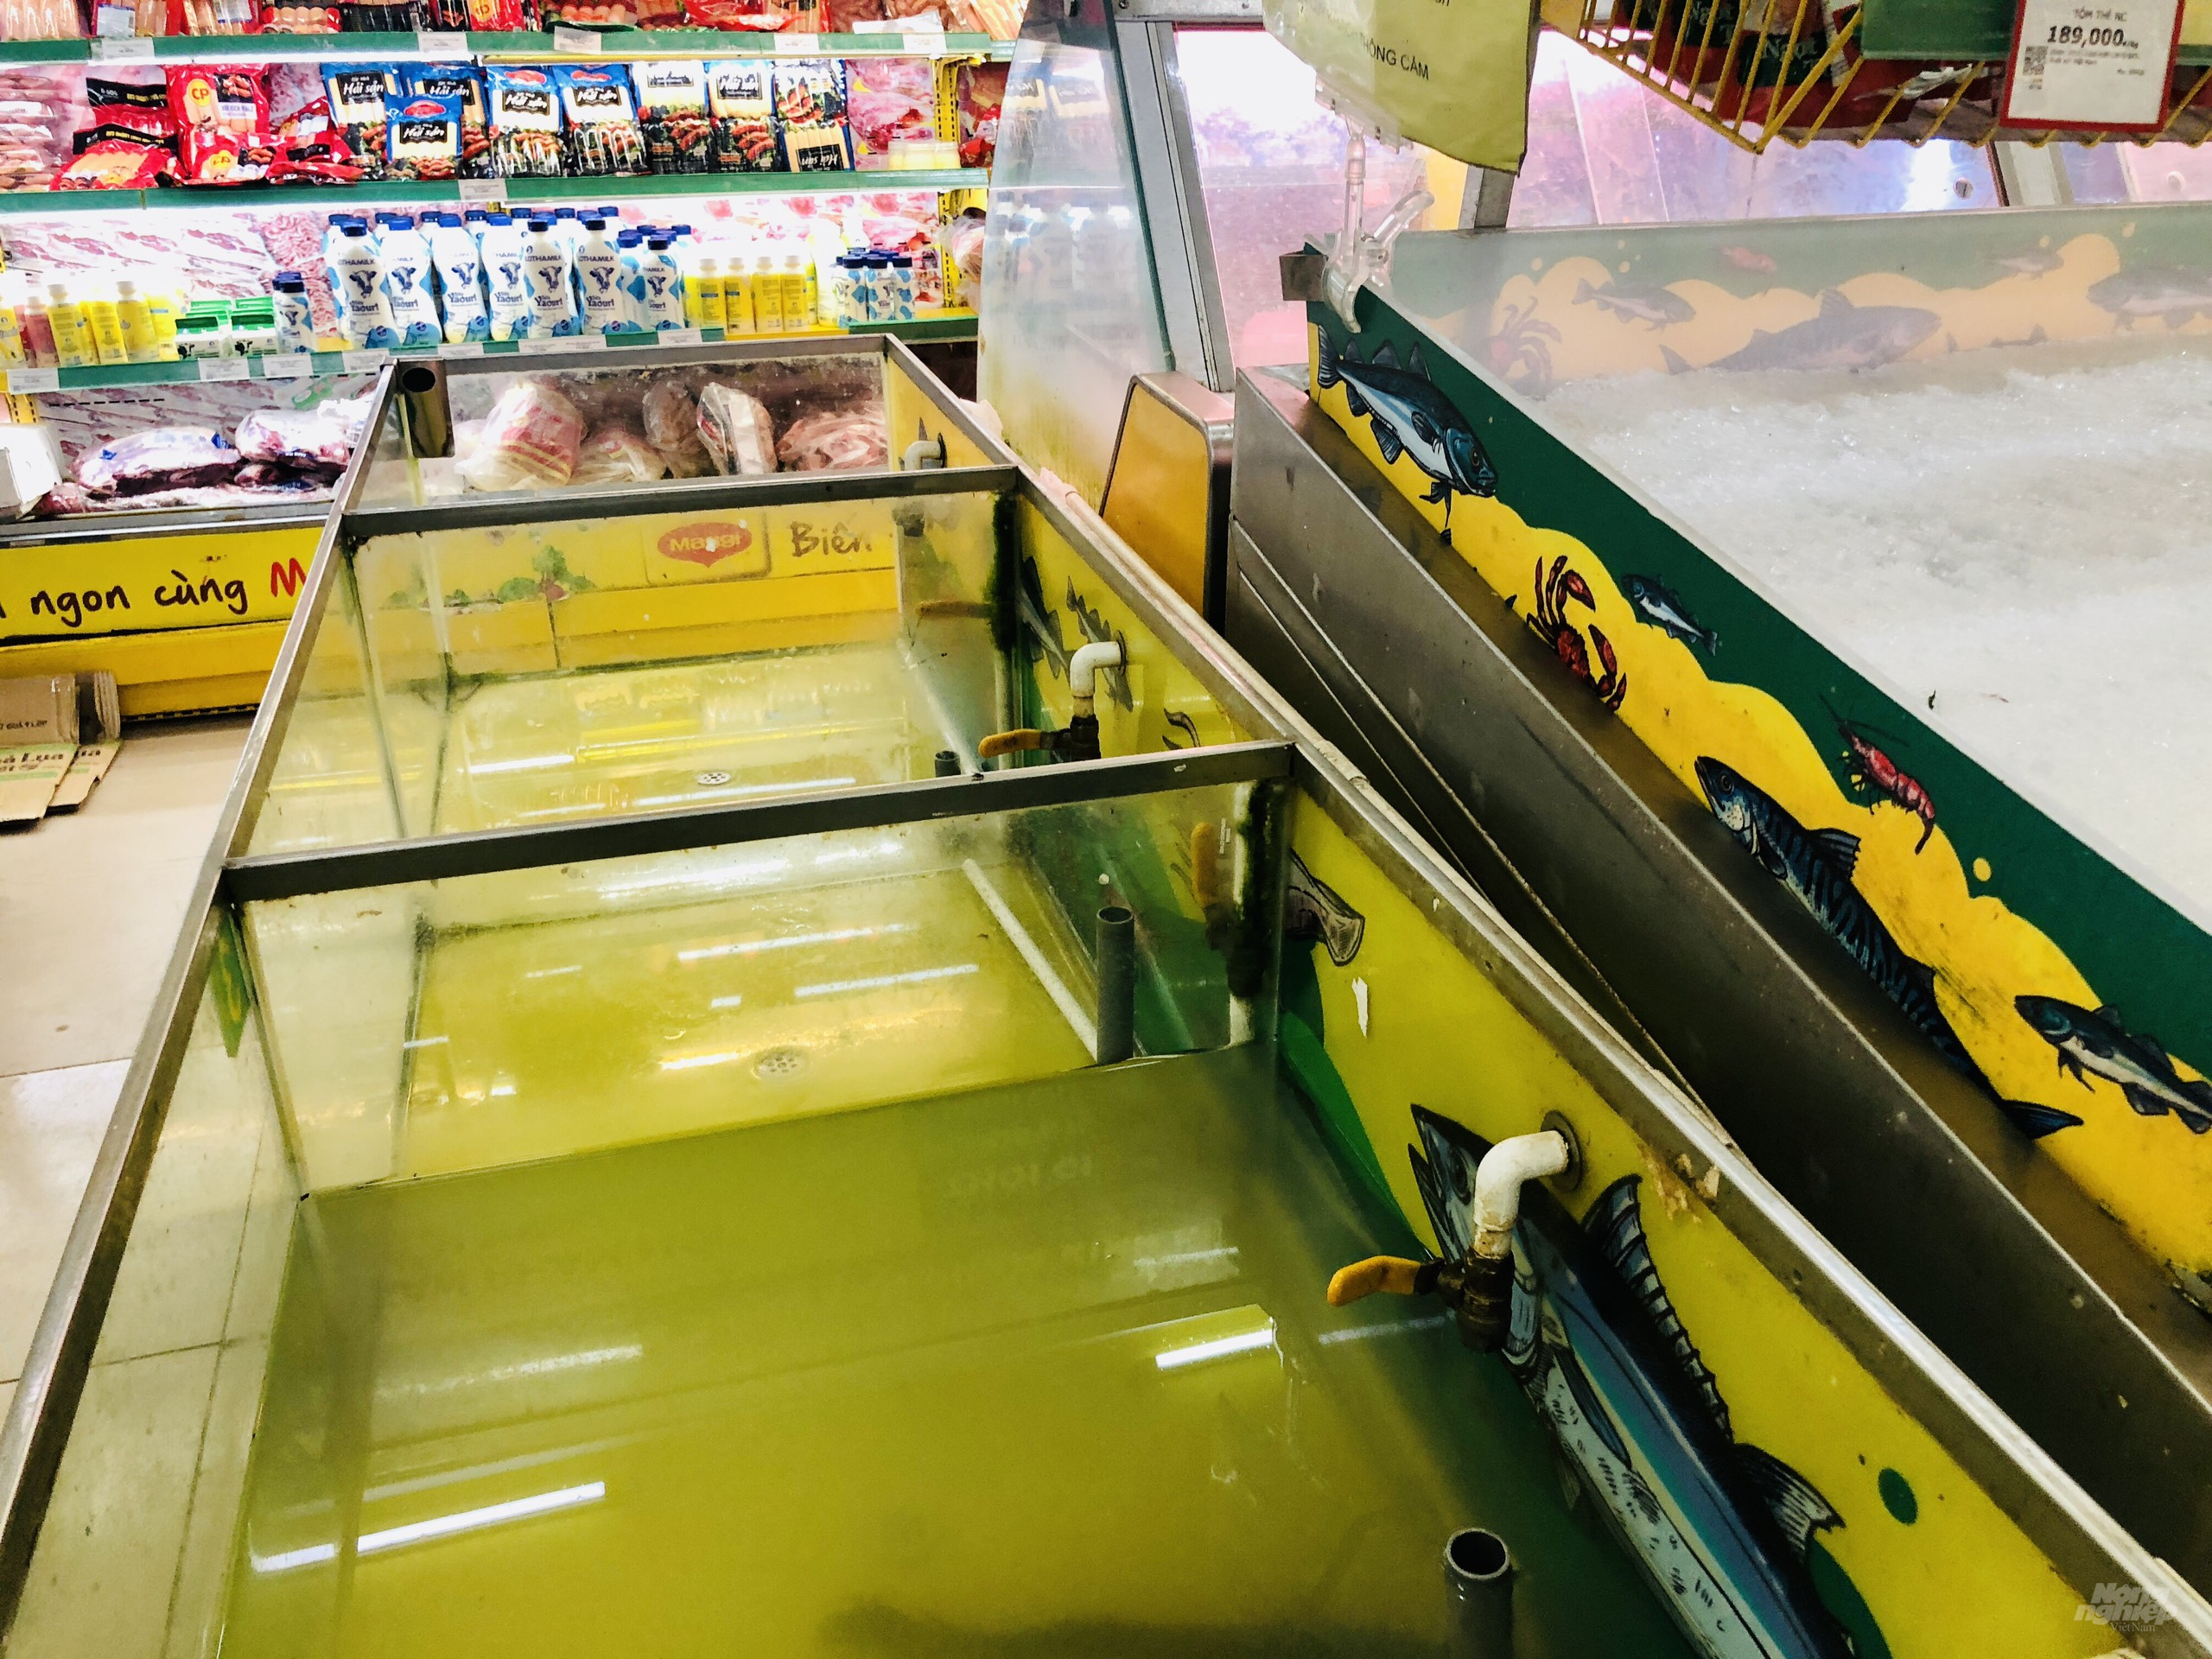 Do nhu cầu mua sắm tăng đột biến khiến nhiều quầy kệ hàng thực phẩm tại một số siêu thị Bách Hoá Xanh cũng đã hết sạch hàng. Ảnh: MV.